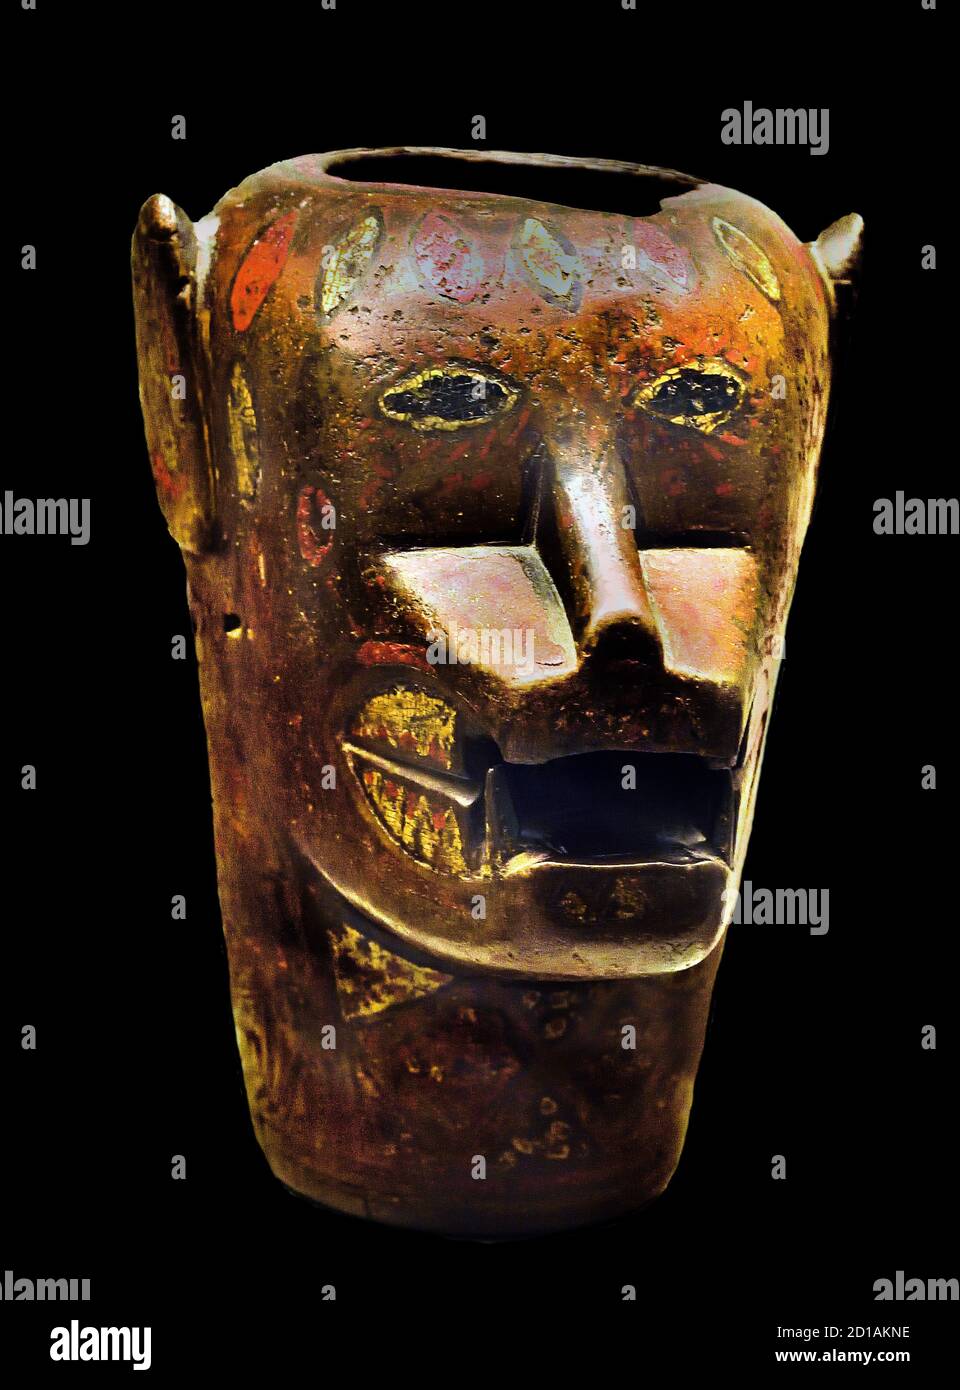 Navire de cérémonie représentant une tête jaguar. Bois polychrome. Inca Culture, horizon tardif (1400-1533 AD). Cuzco, Pérou, Mexique, Mexicains, Amérique, Banque D'Images